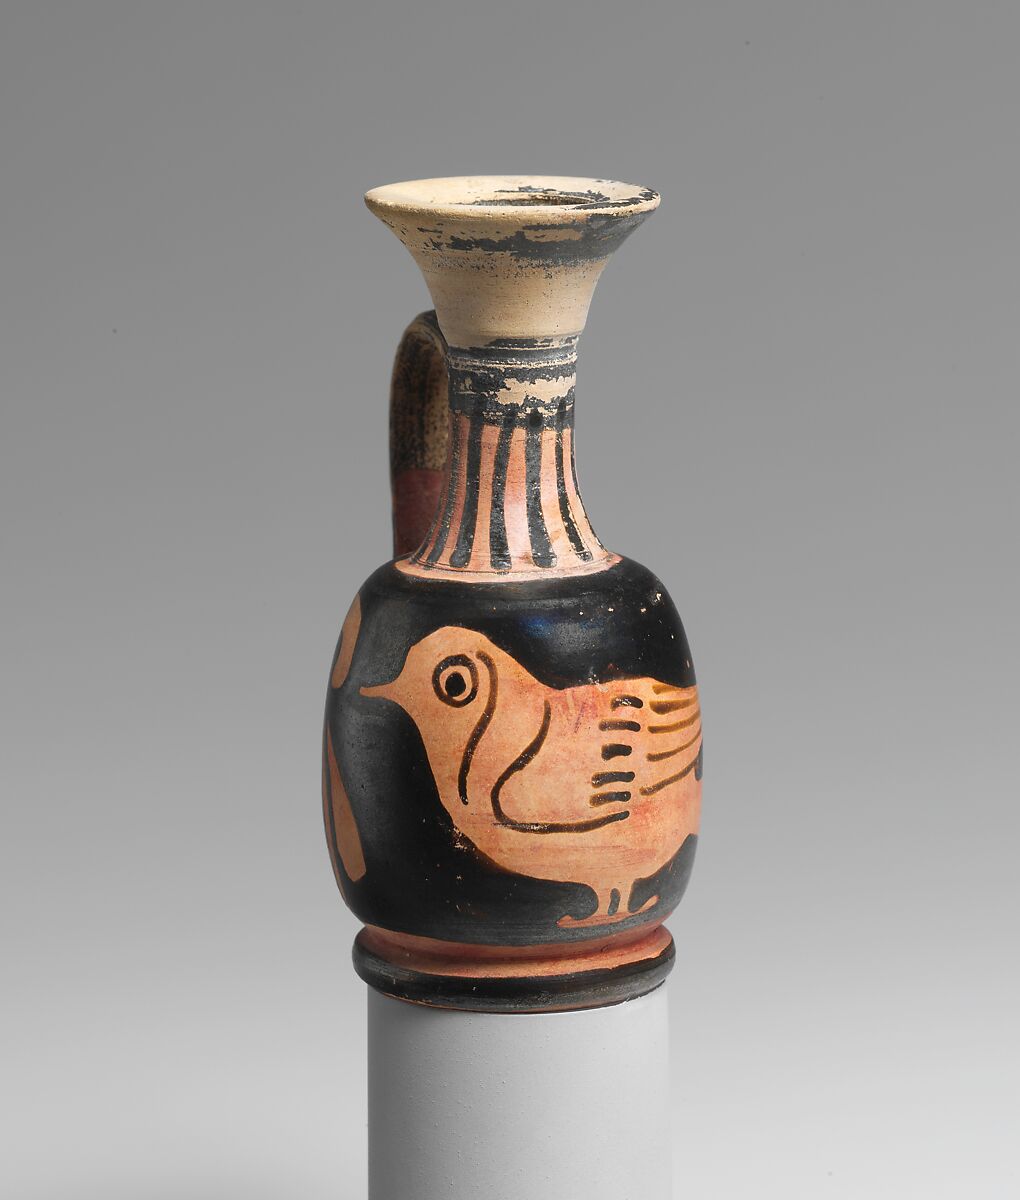 Terracotta lekythos (oil flask) with a bird, Terracotta, Greek, South Italian, Apulian 